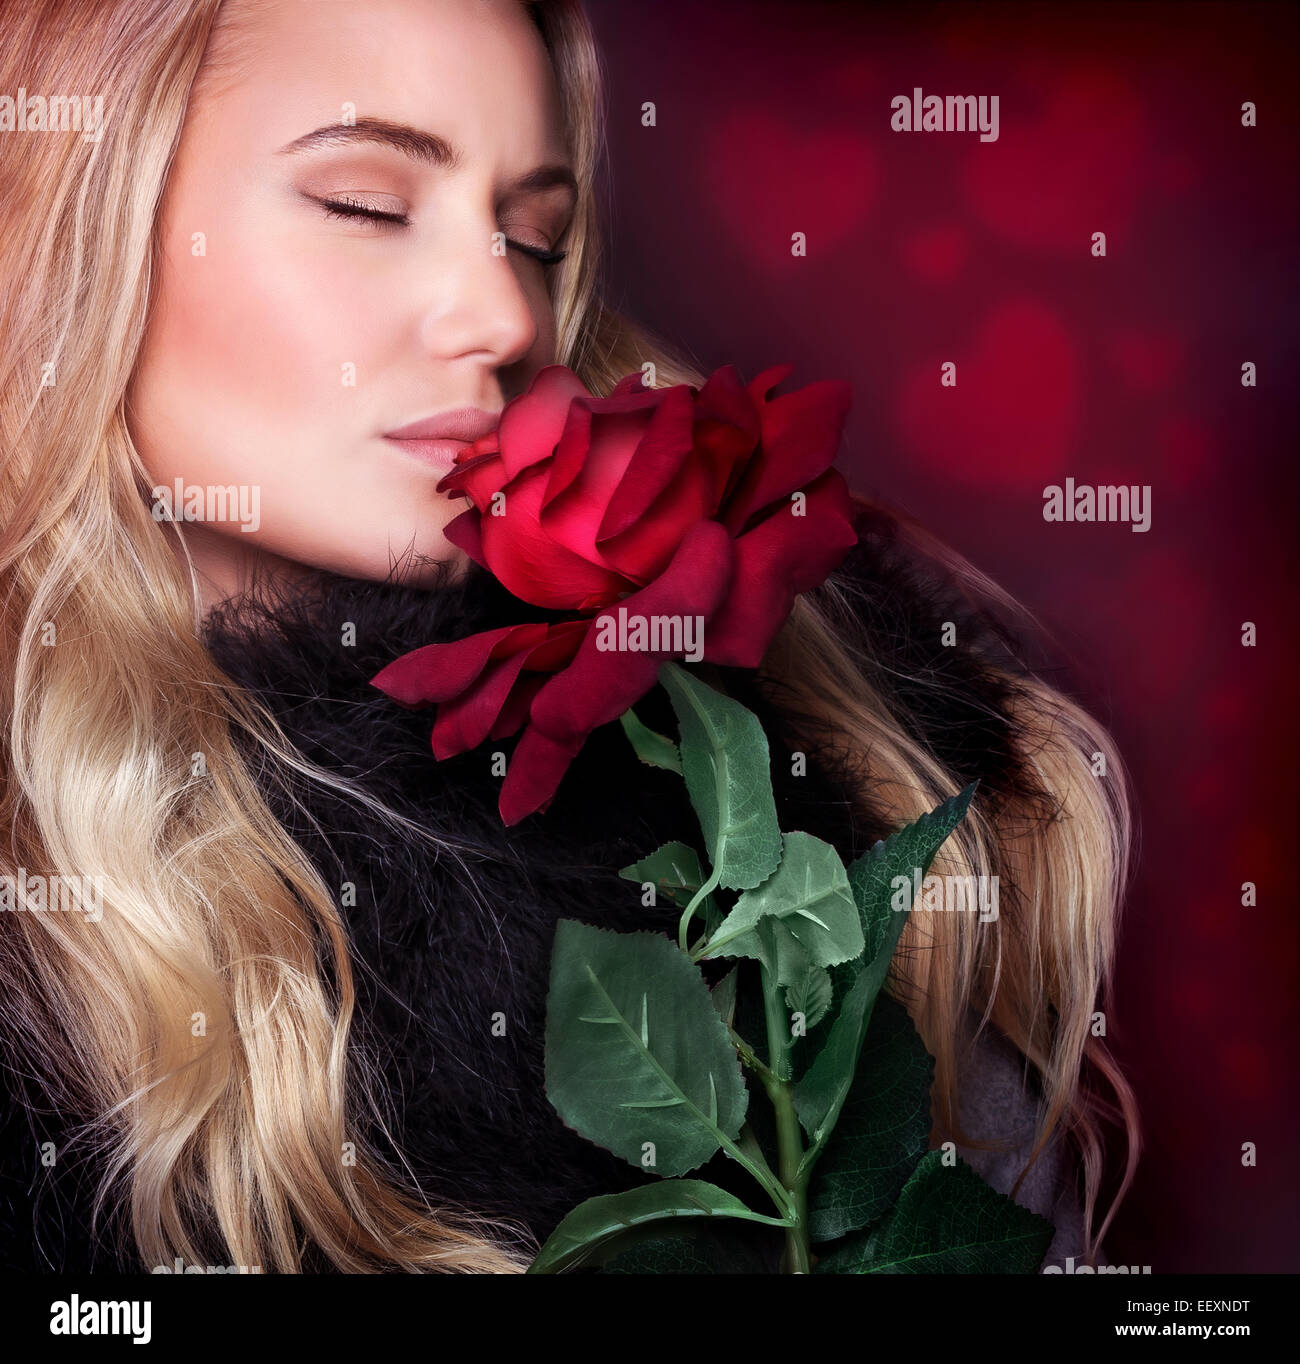 Closeup Portrait schöne blonde Frau mit geschlossenen Augen riechen frische rote rose auf Hintergrund mit Herz ornament Stockfoto